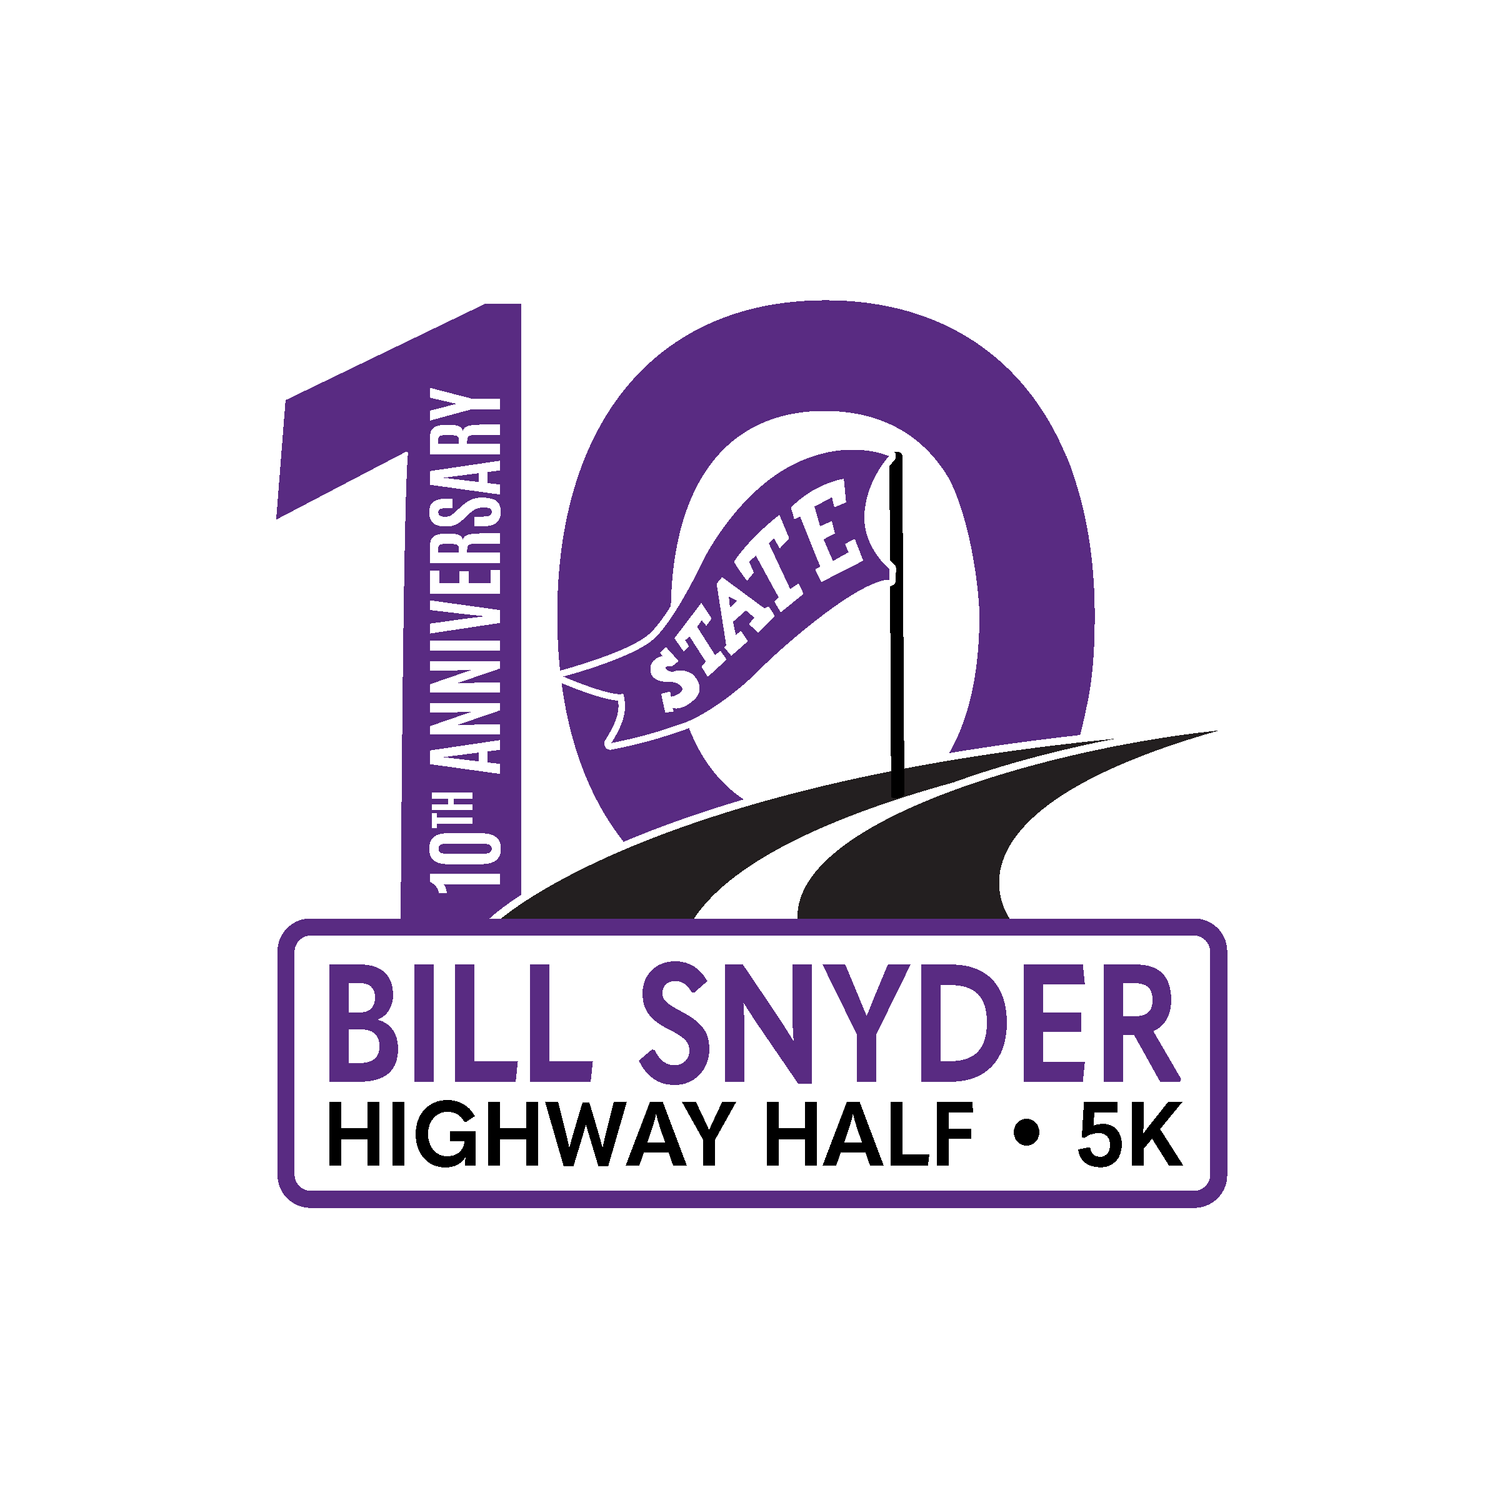 Bill Snyder Highway Half & 5K